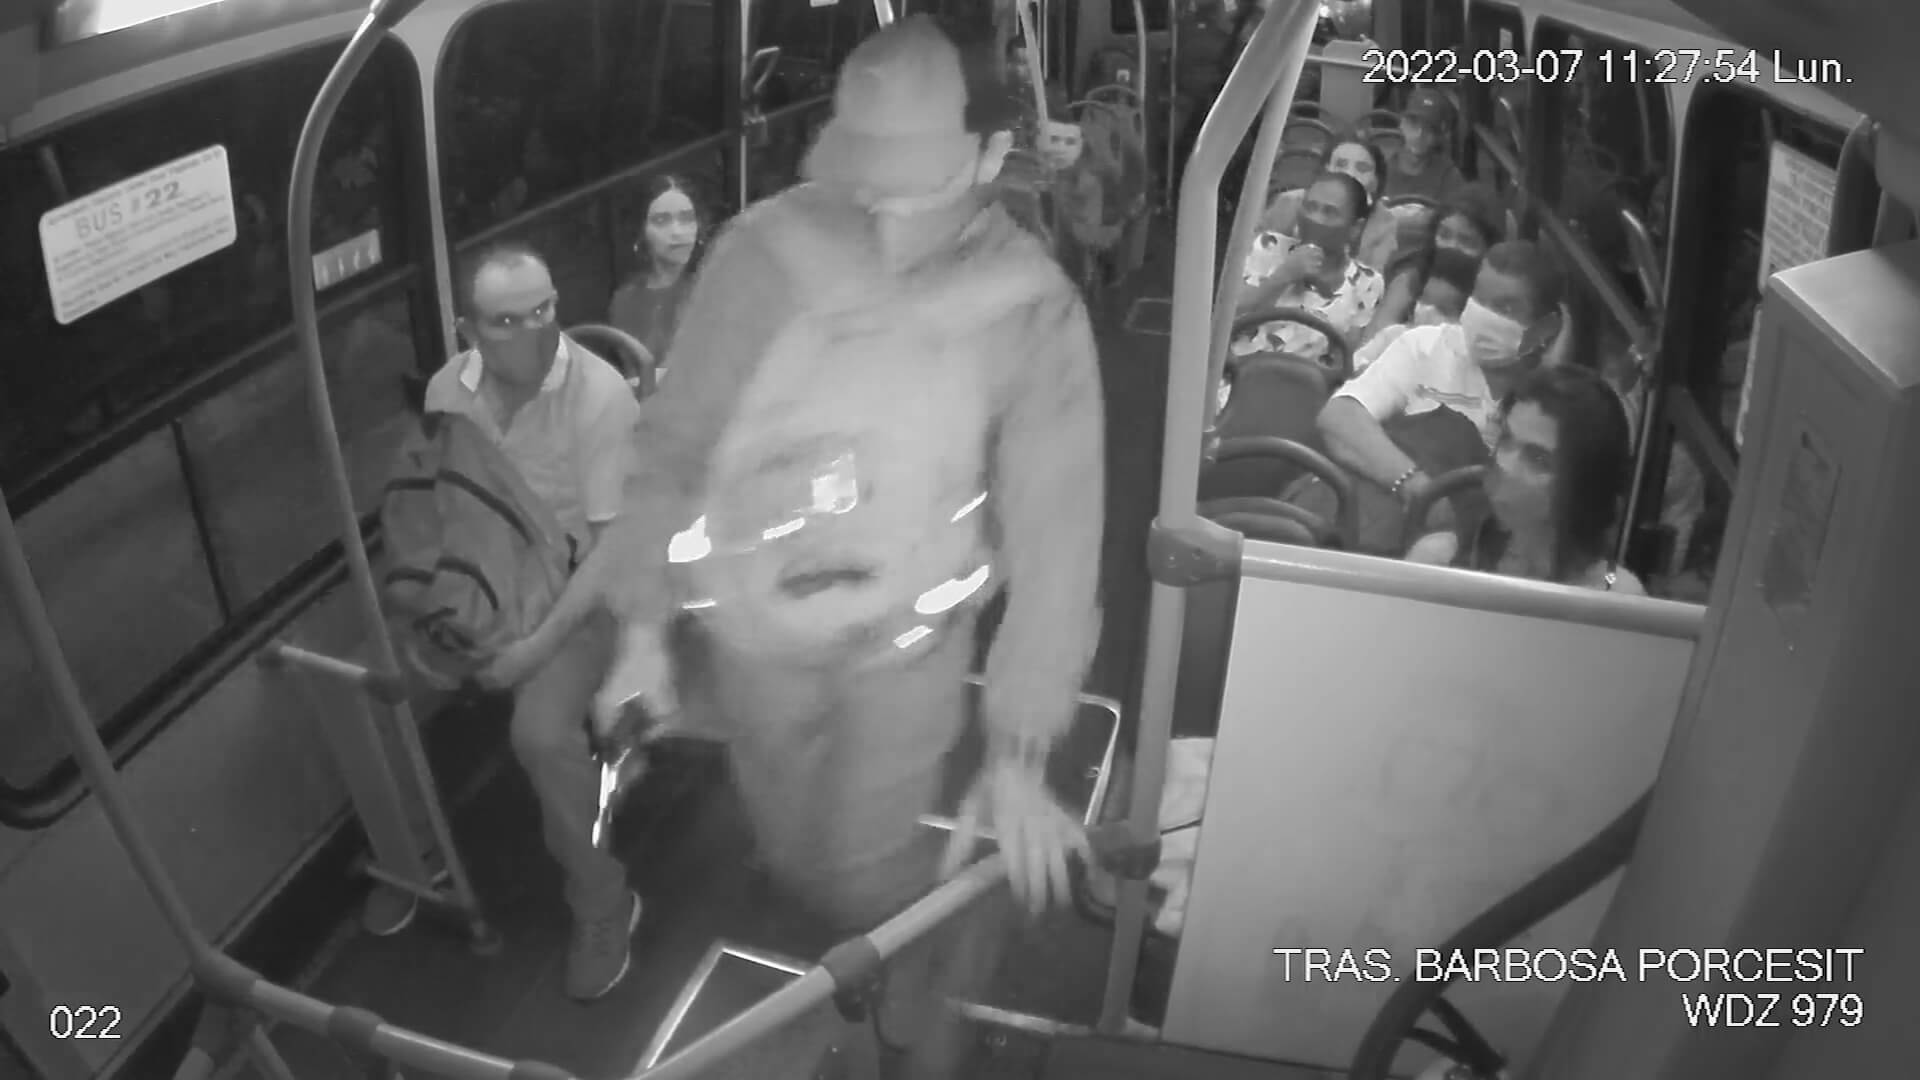 Nuevo asalto a pasajeros de bus en ruta Medellín-Barbosa